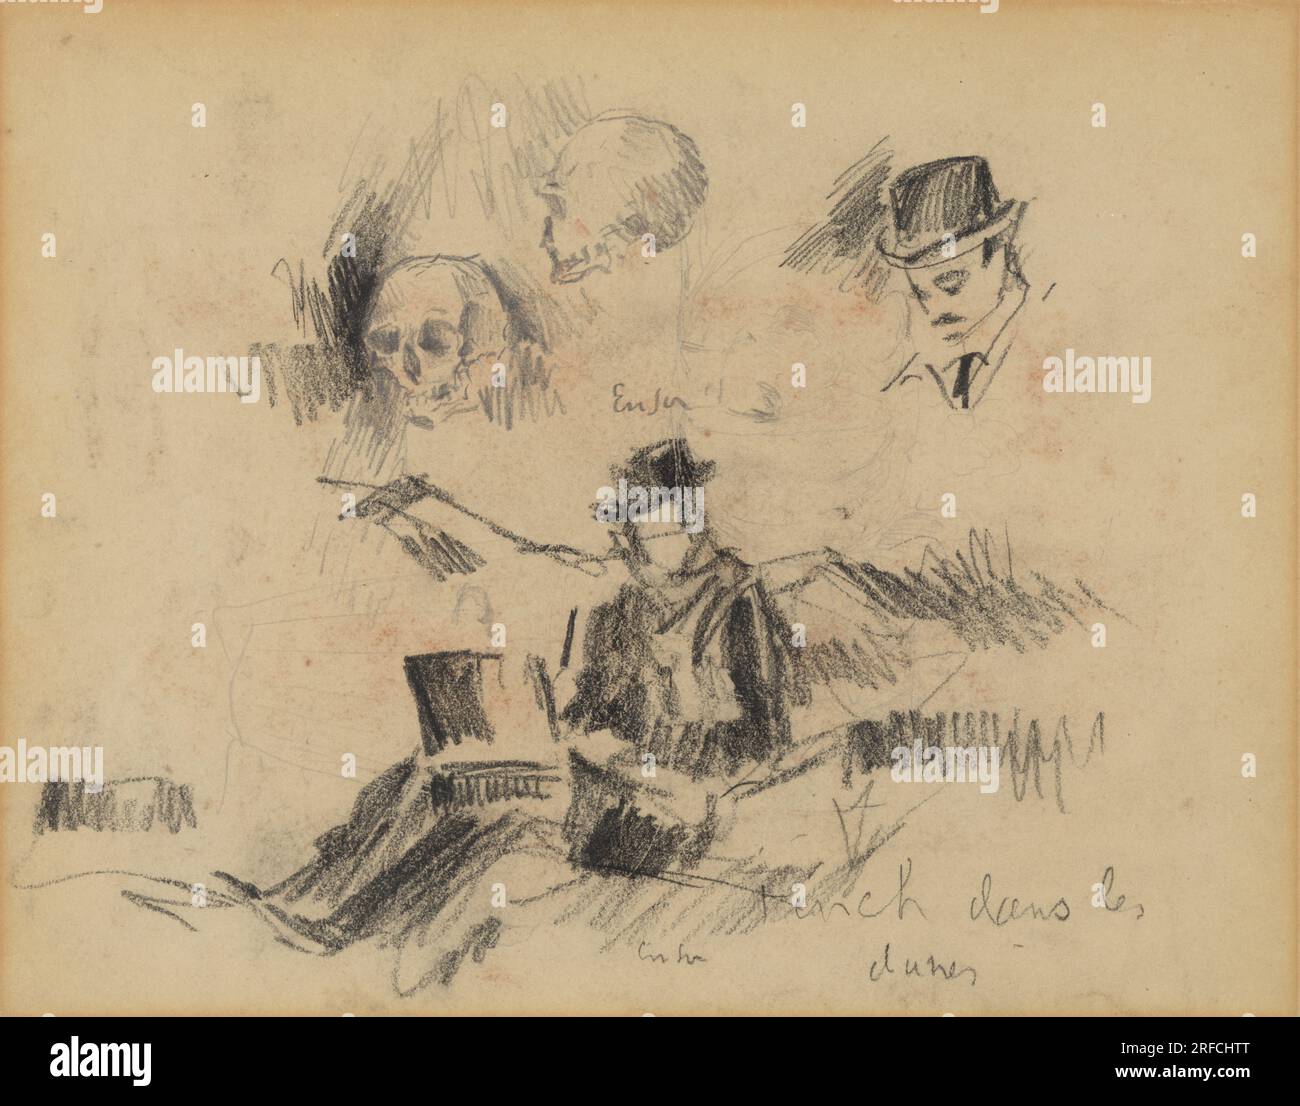 Doodshoofden en Willy Finch in de duinen (Recto) 1888 von James Ensor Stockfoto